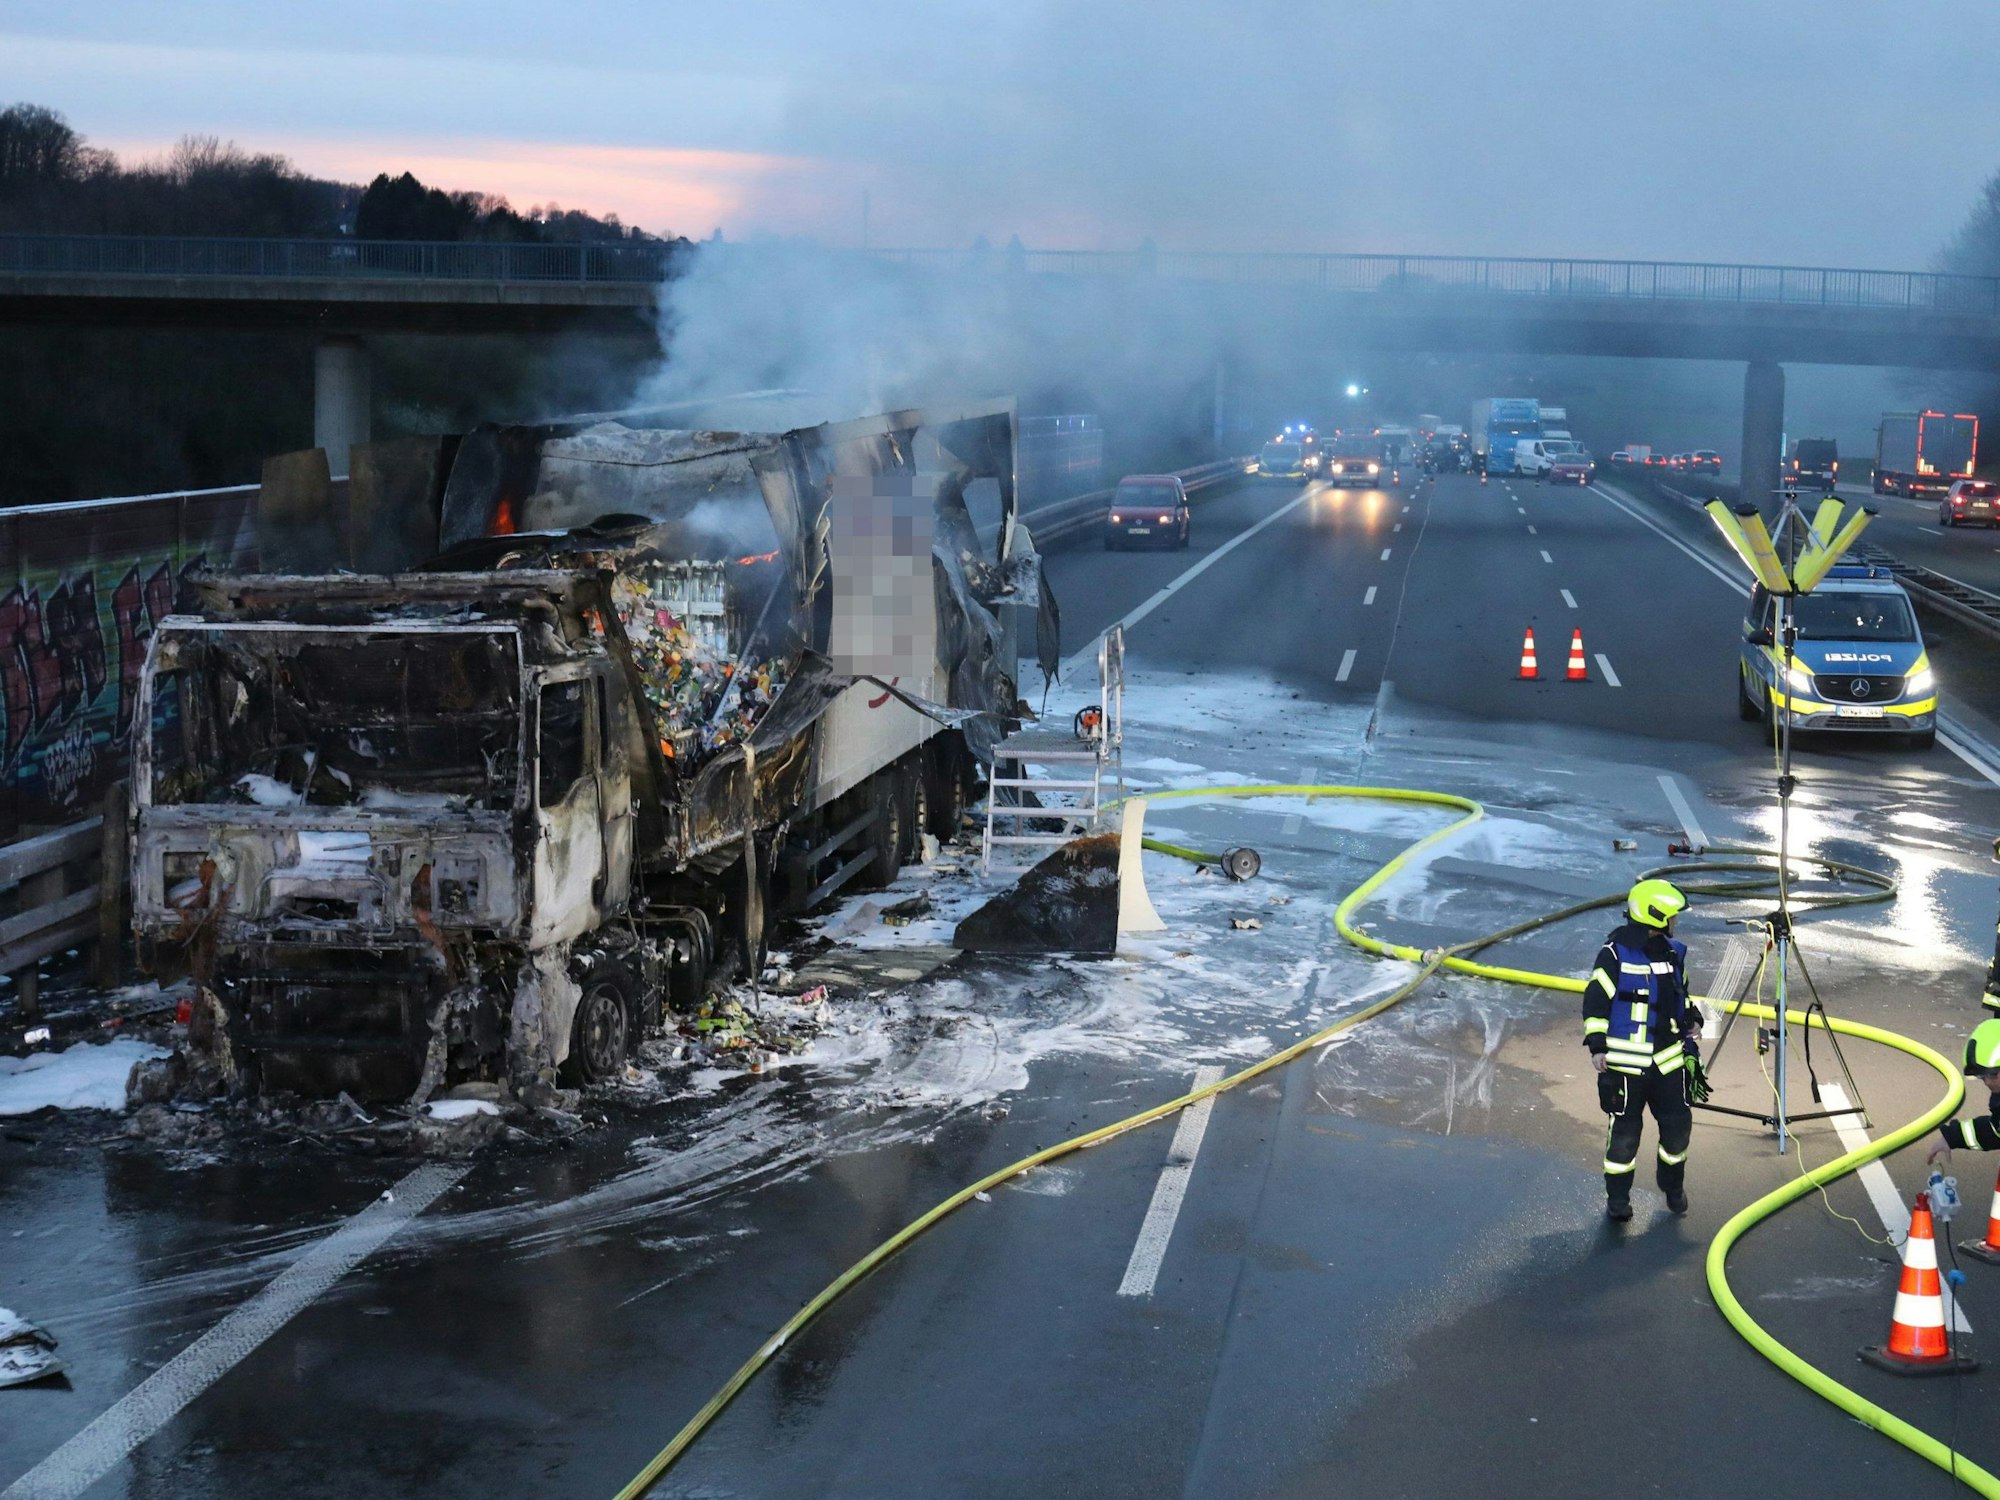 Einsatzkräfte der Feuerwehr löschen einen in Brand geratenen Lkw auf der Autobahn 3 bei Königswinter. Der brennende Laster mit Lebensmitteln an Bord hat am Donnerstagabend für Staus auf der A3 Richtung Frankfurt gesorgt.